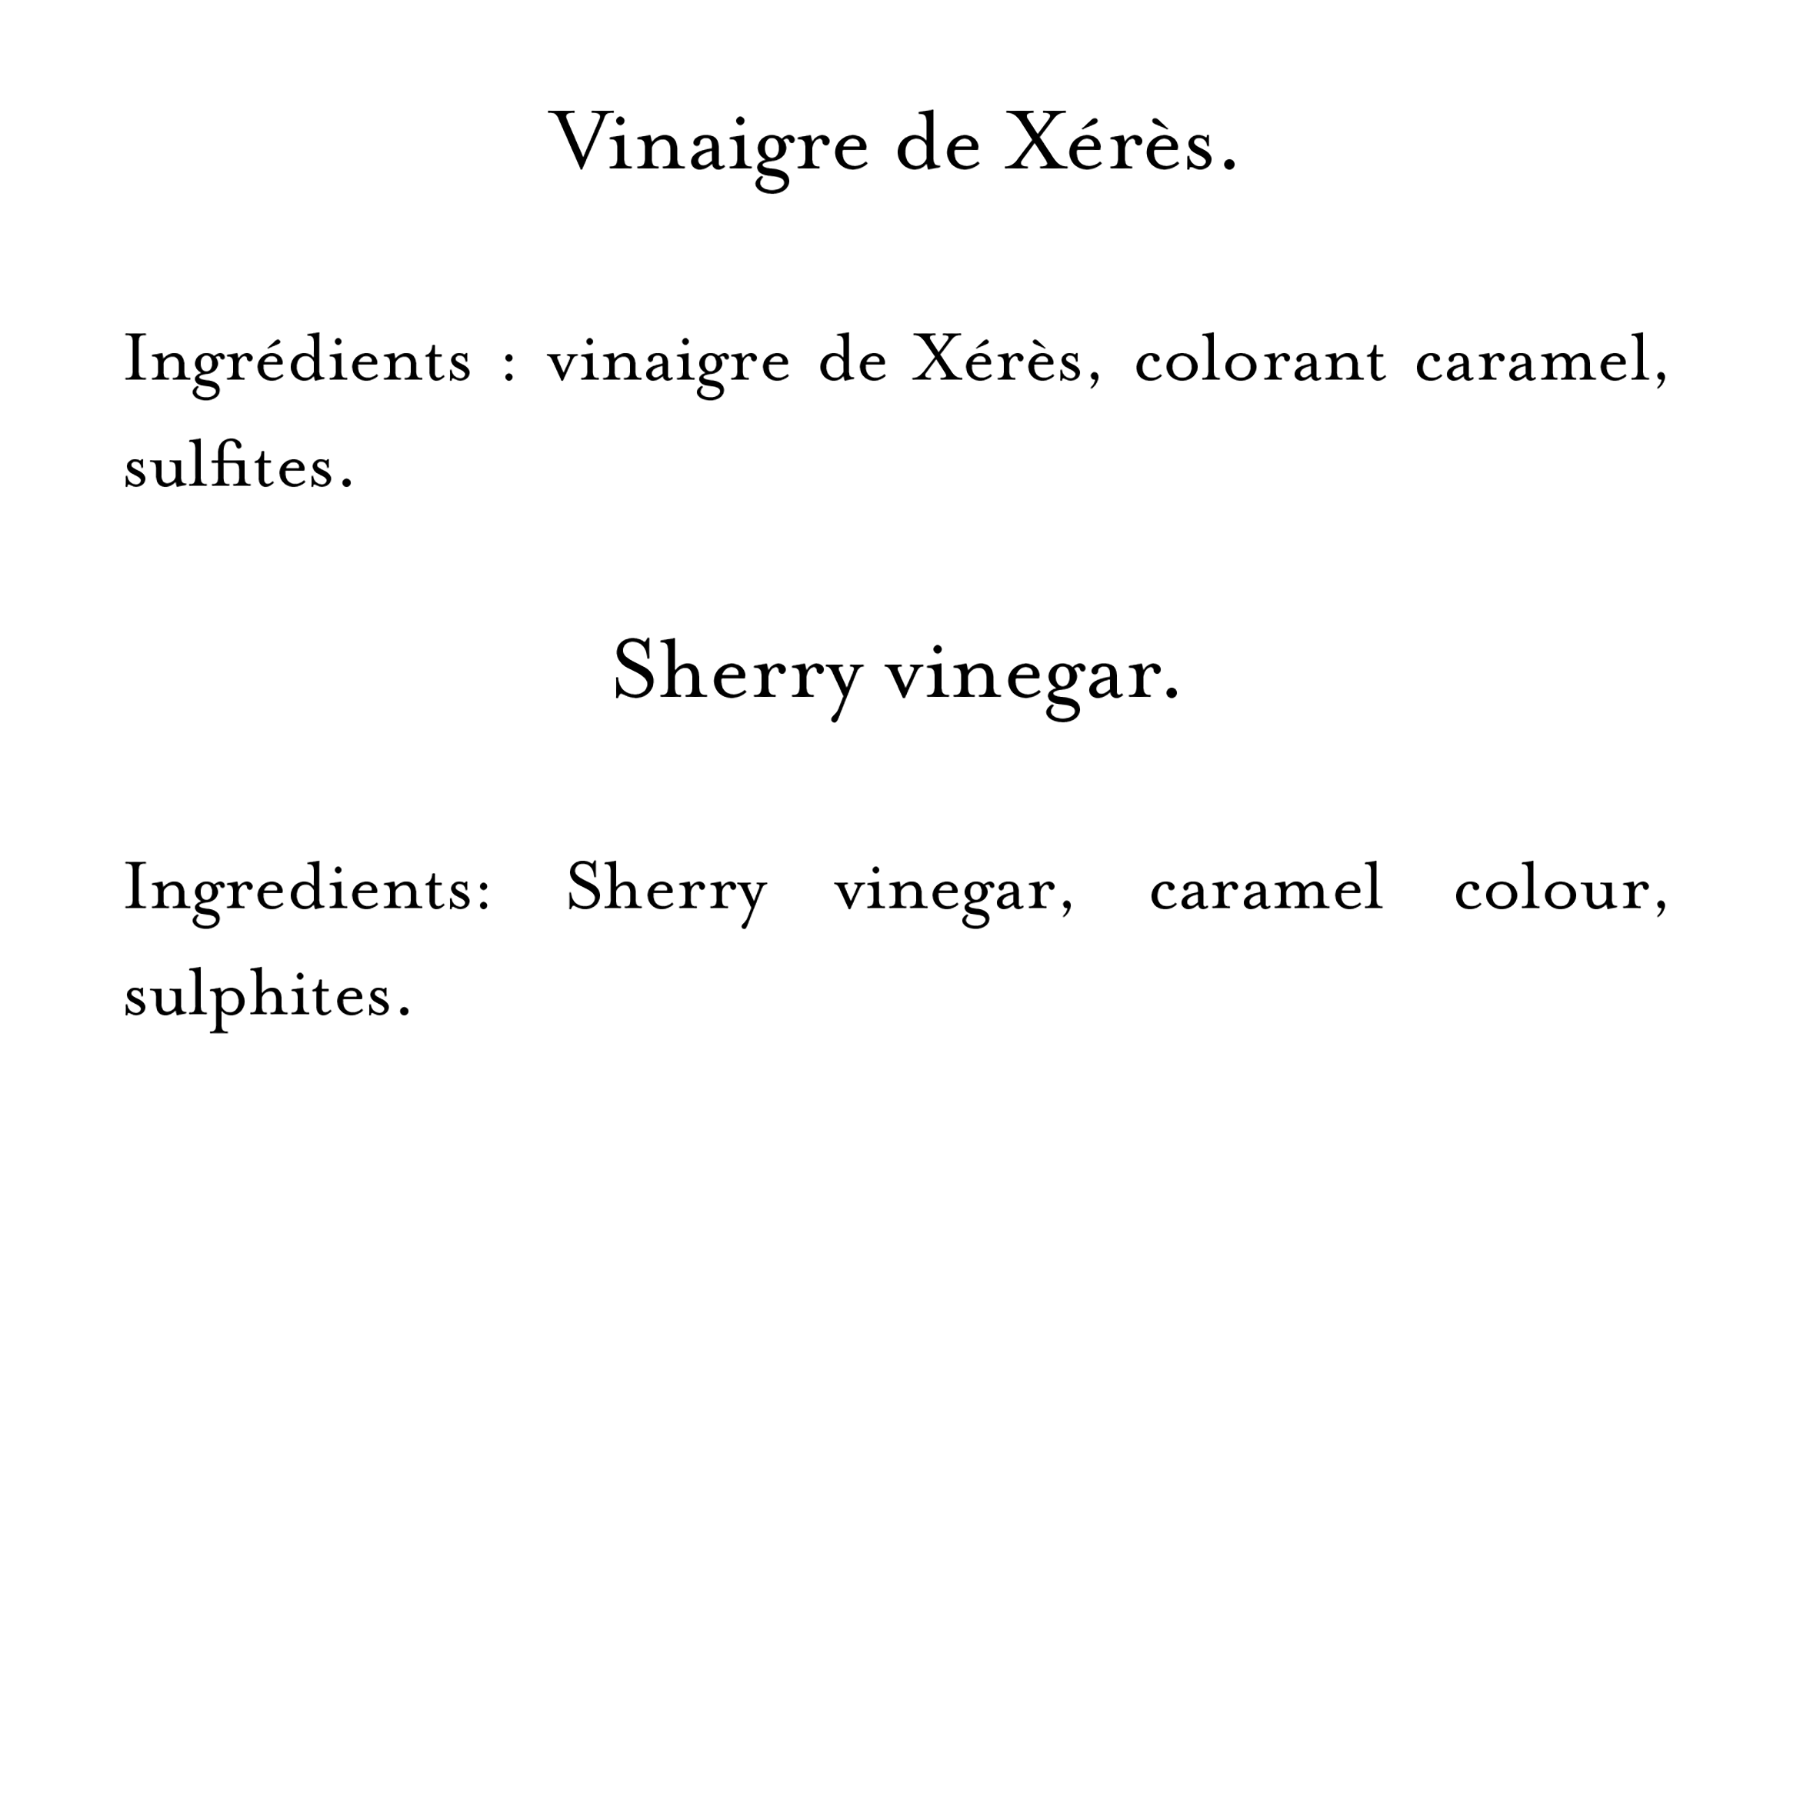 Ingredients (11)